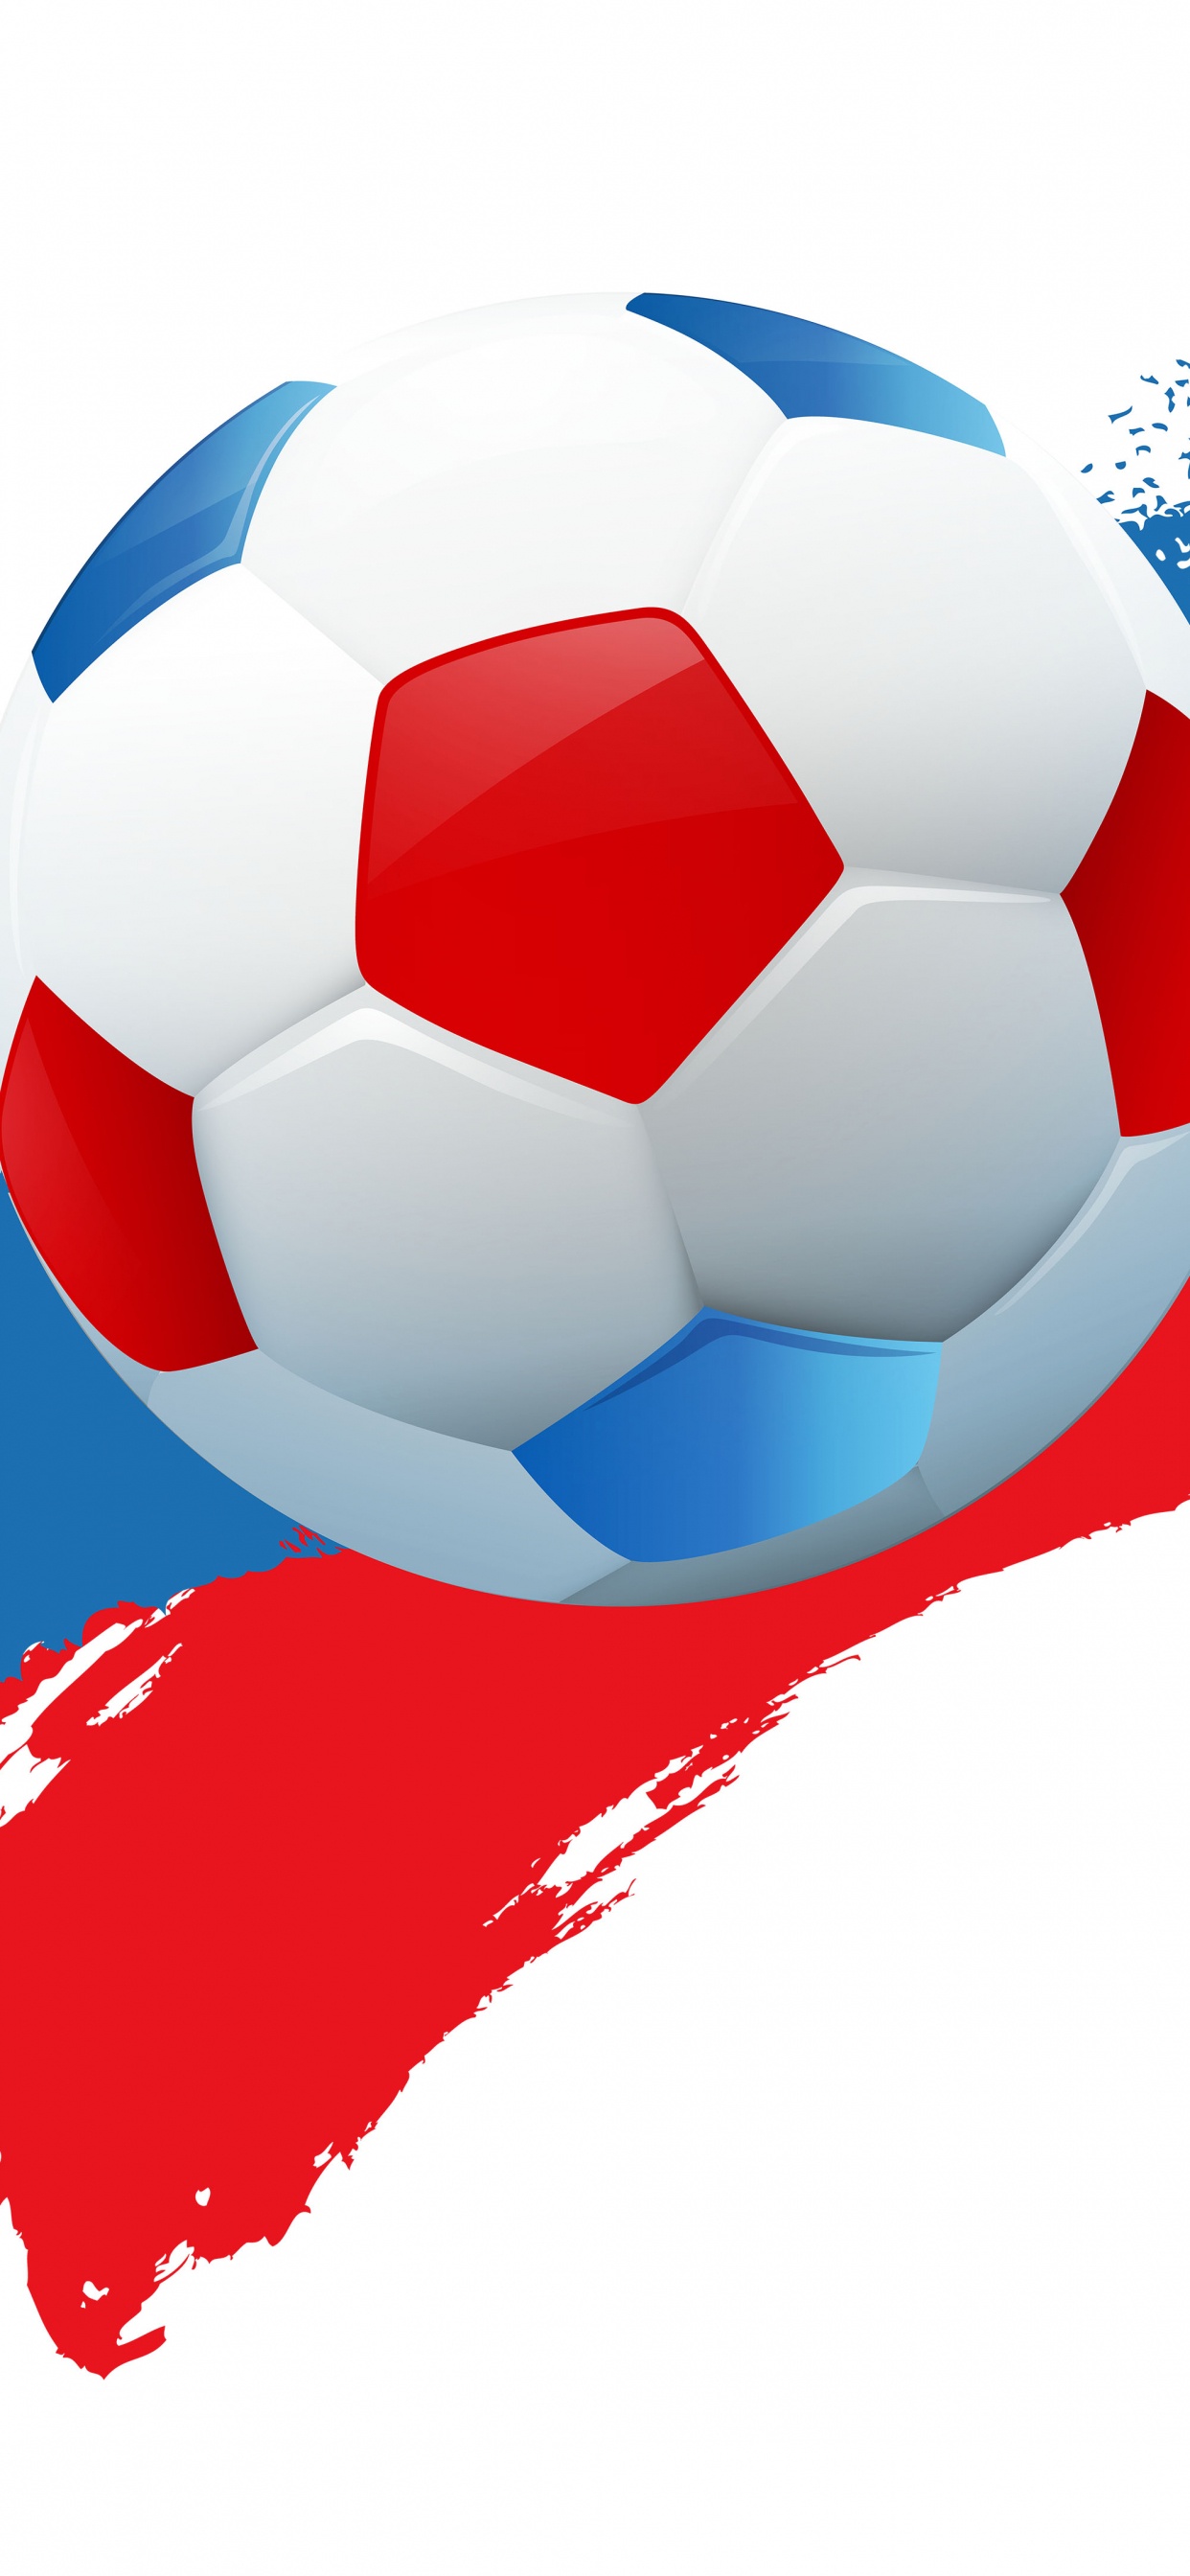 2018年世界杯, 球, 国际足联, 足球, 体育设备 壁纸 1242x2688 允许